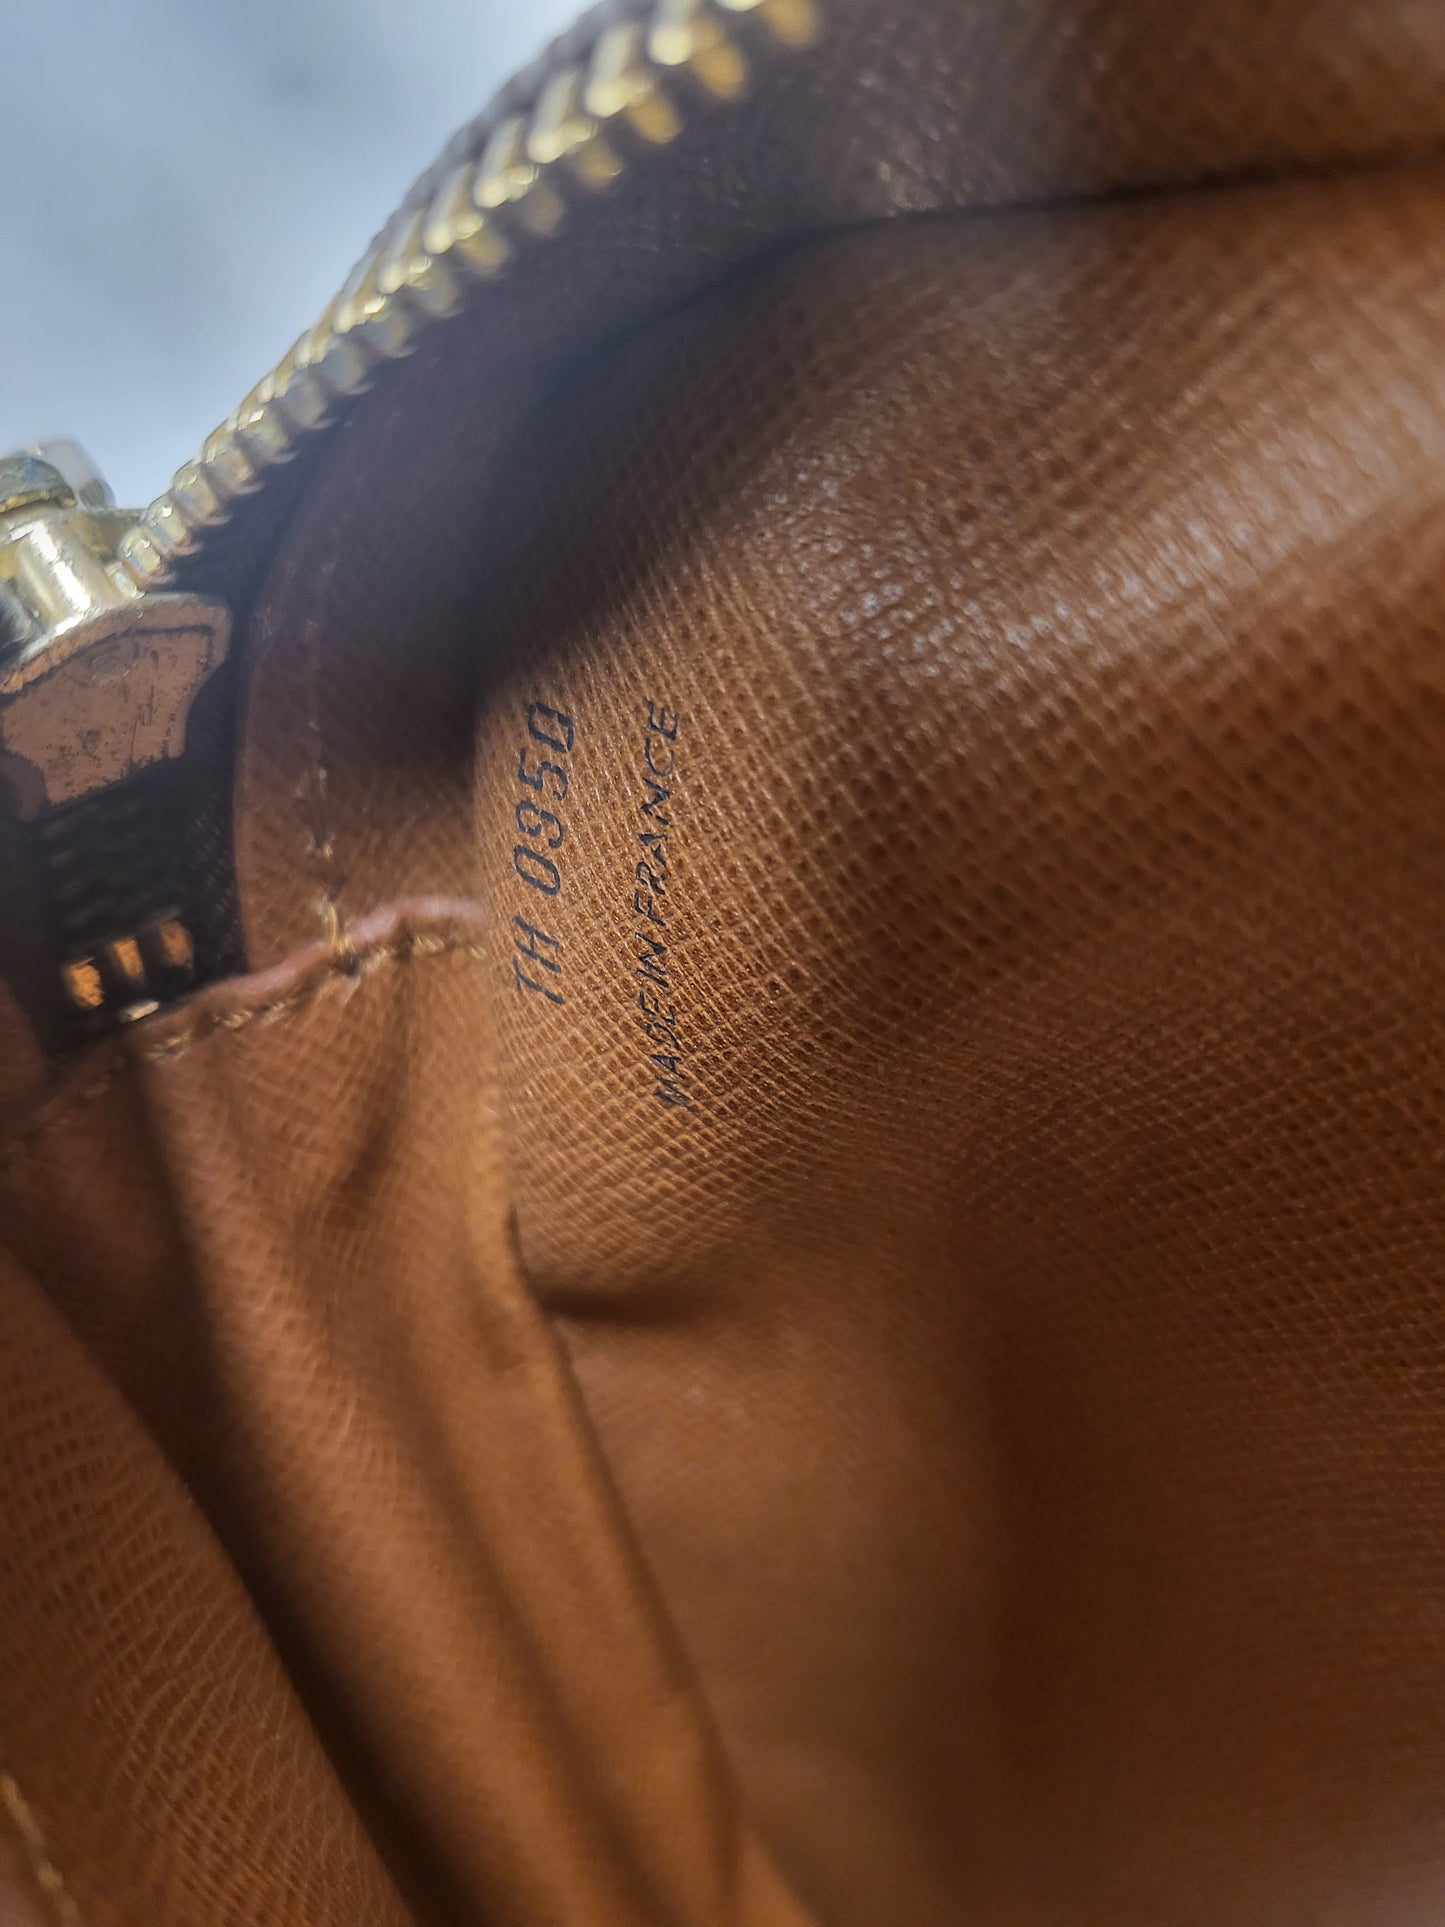 Authentic pre-owned Louis Vuitton Jeune Fille mm crossbody shoulder bag